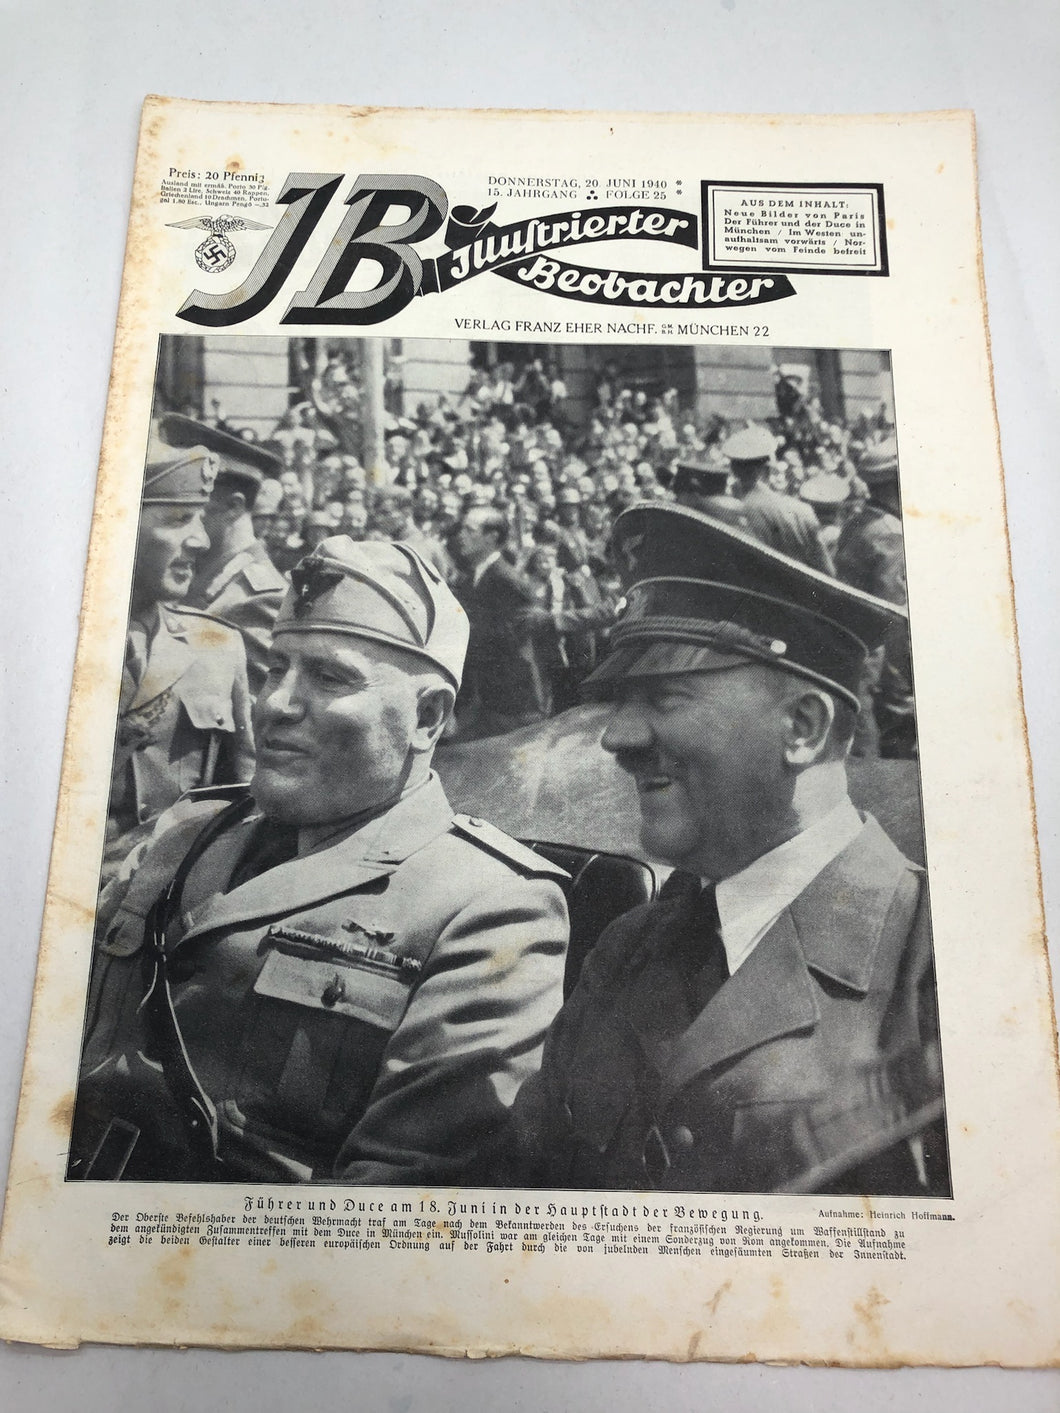 JB Juustrierter Beobachter NSDAP Magazine Original WW2 German - 20 June 1940